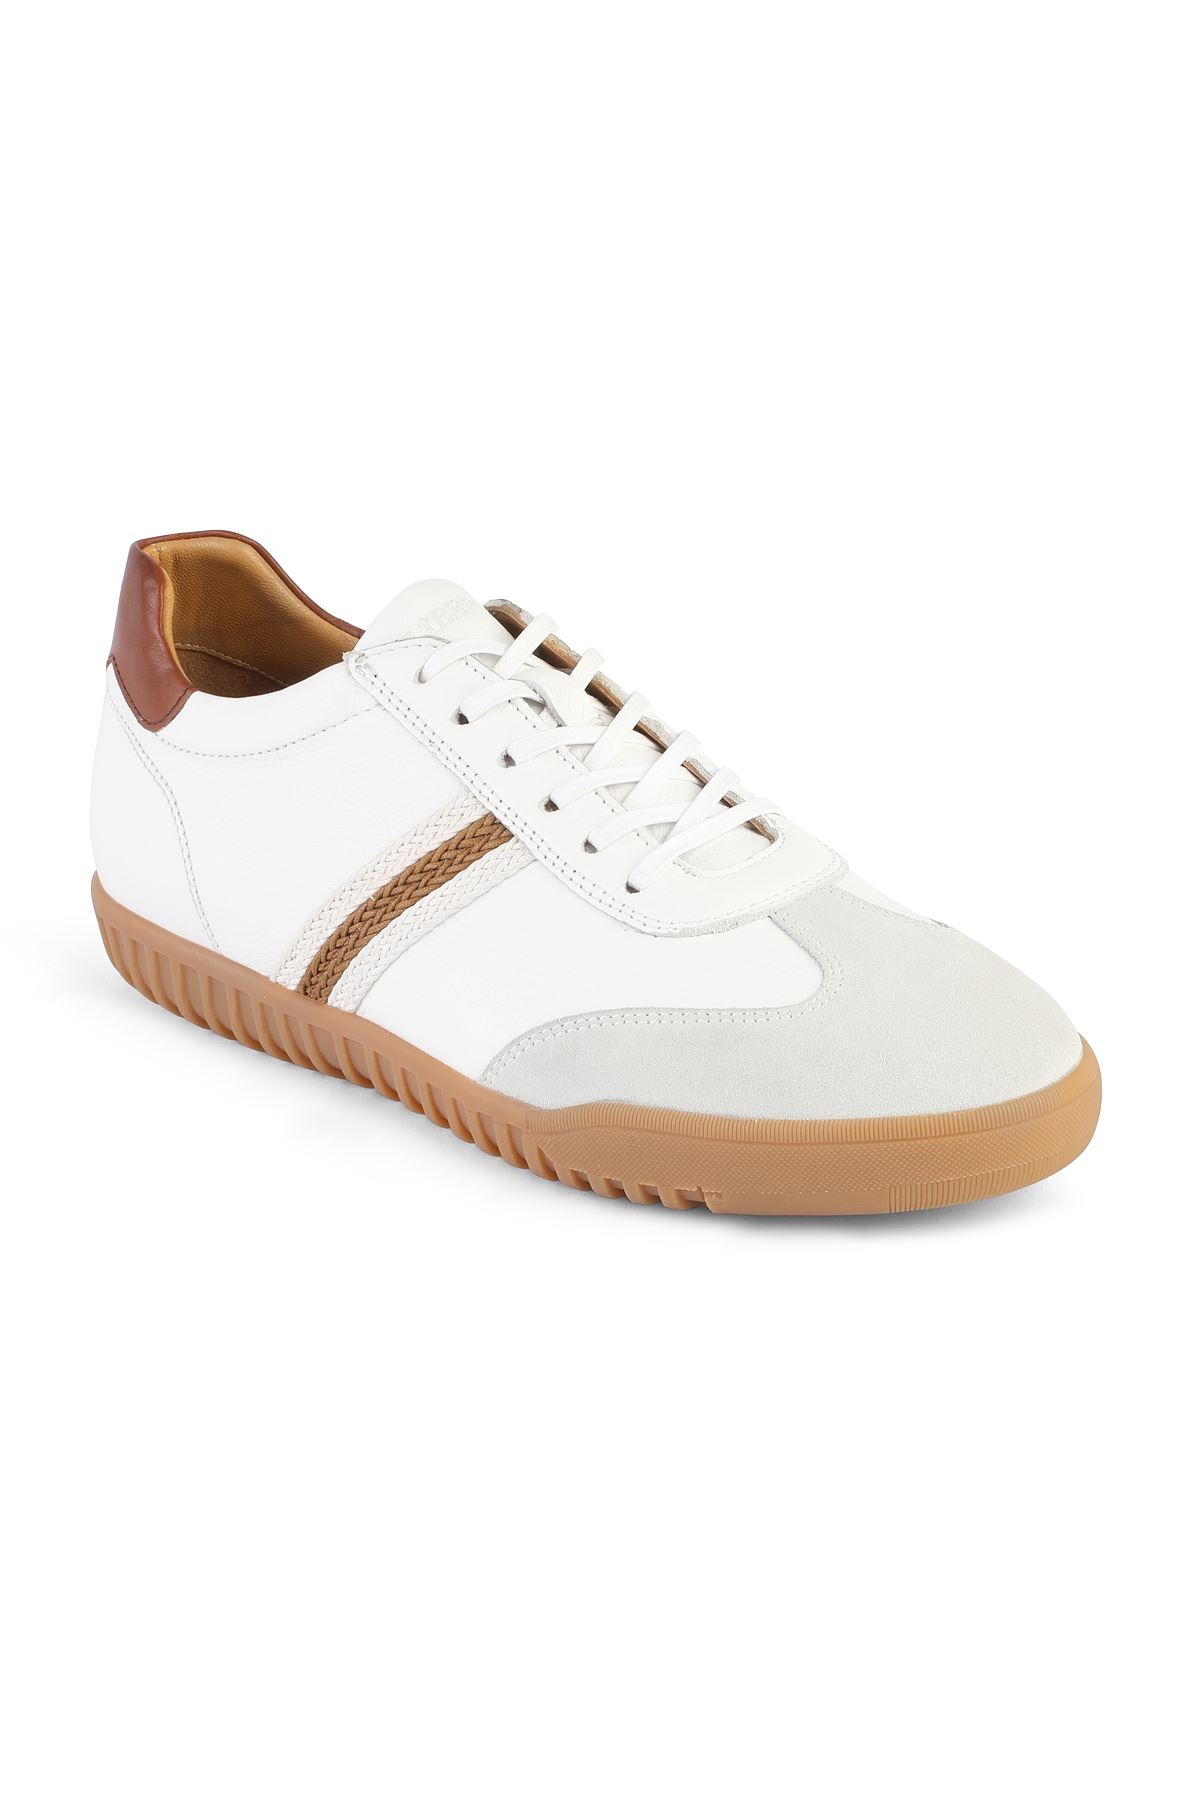 Libero 3422 Beyaz Spor Ayakkabı